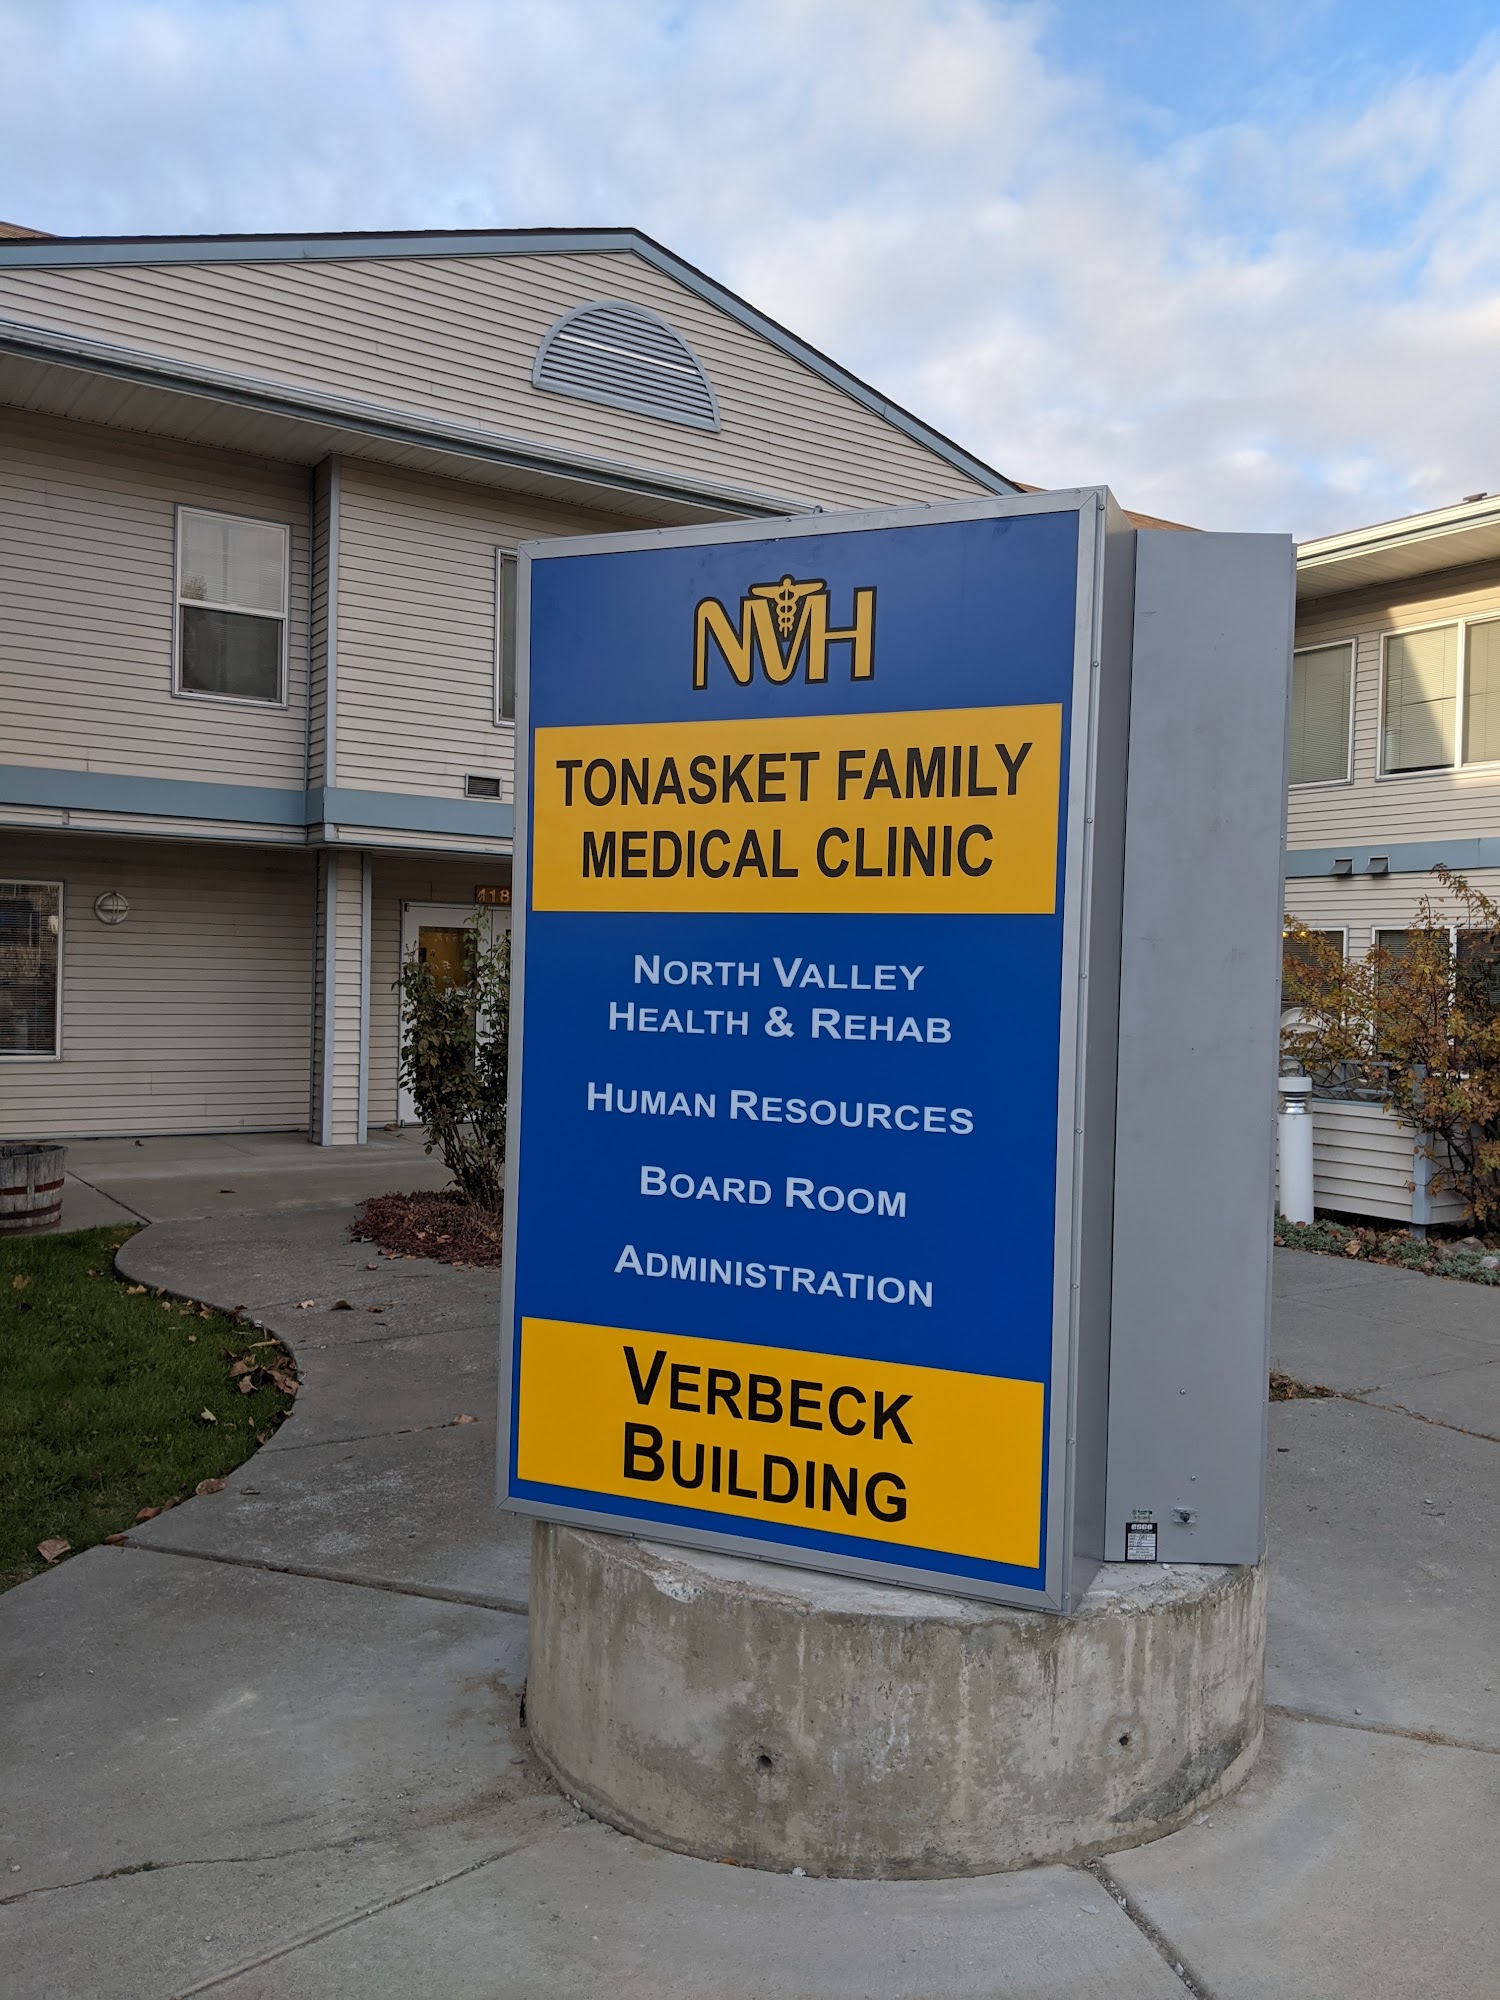 Tonasket Family Medical Clinic 118 S Whitcomb Ave, Tonasket Washington 98855